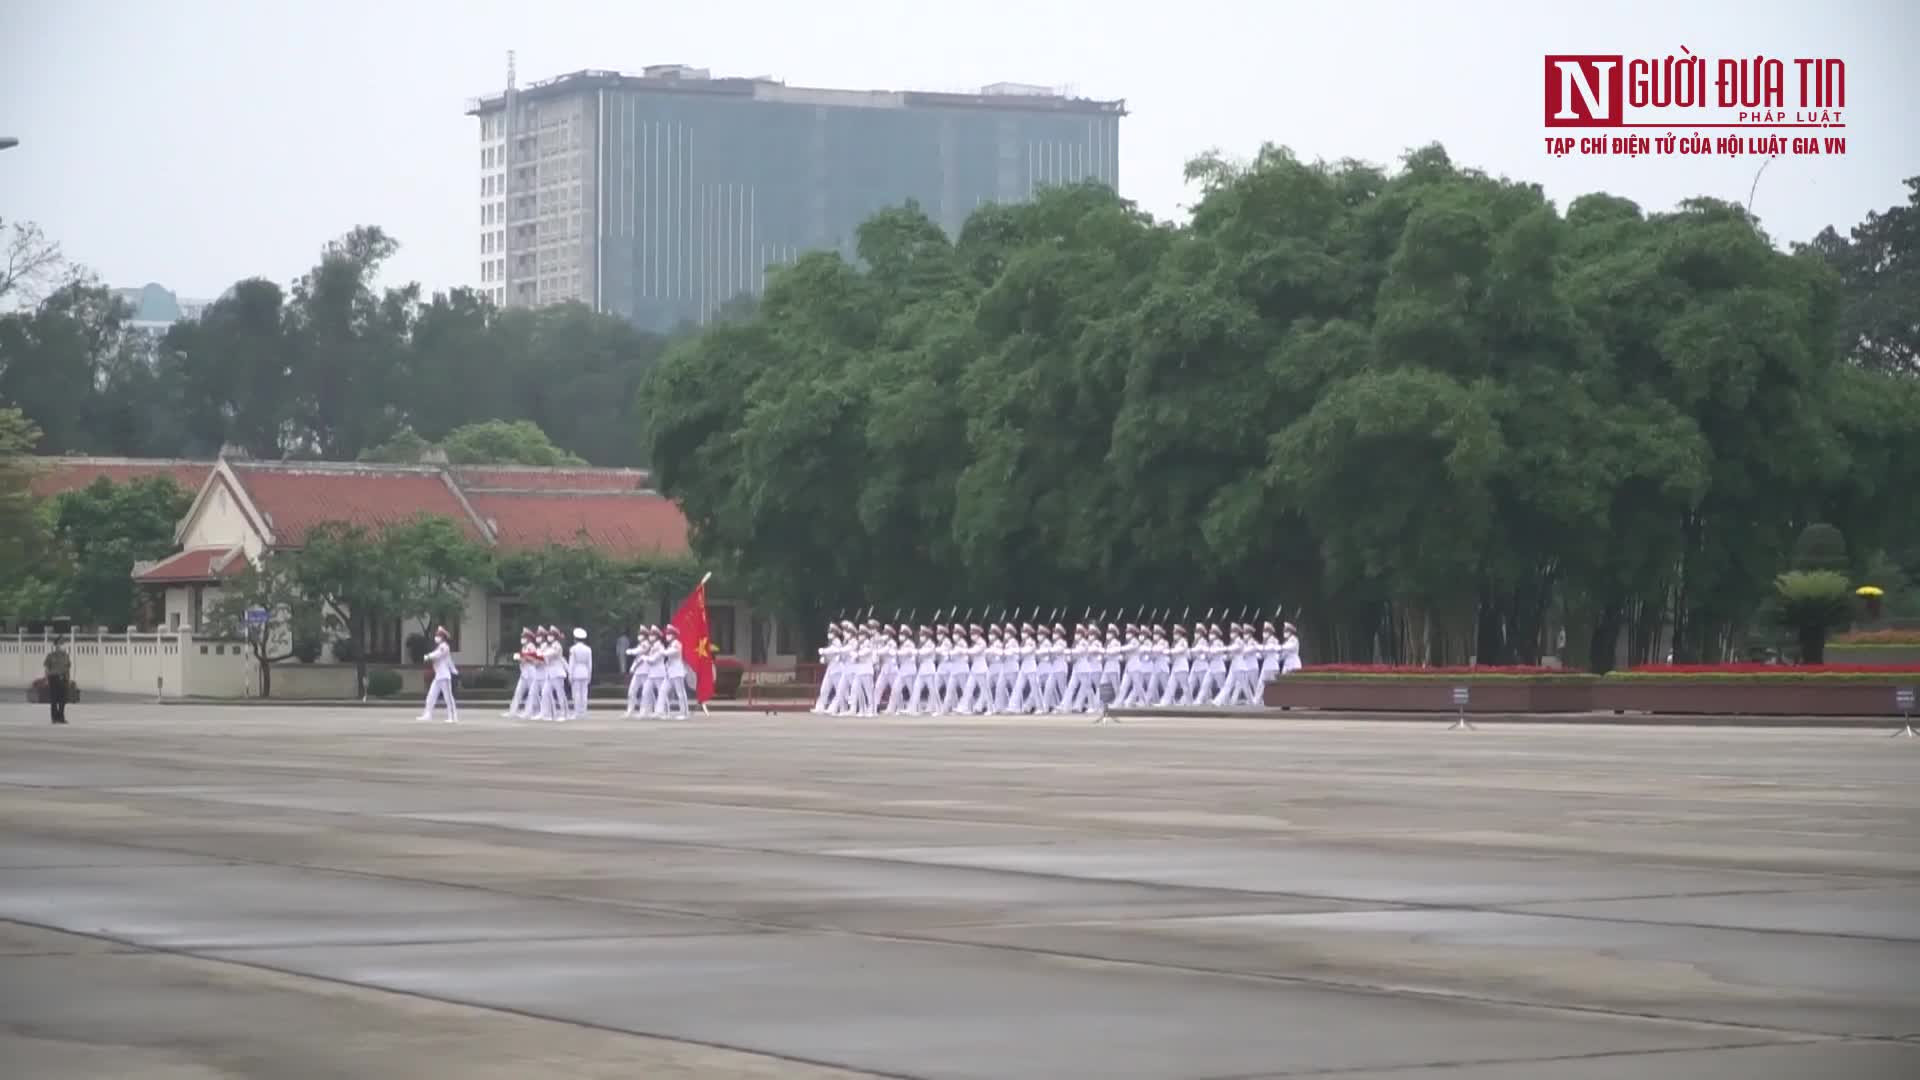 Thiêng liêng nghi lễ thượng cờ tại lăng Chủ tịch Hồ Chí Minh